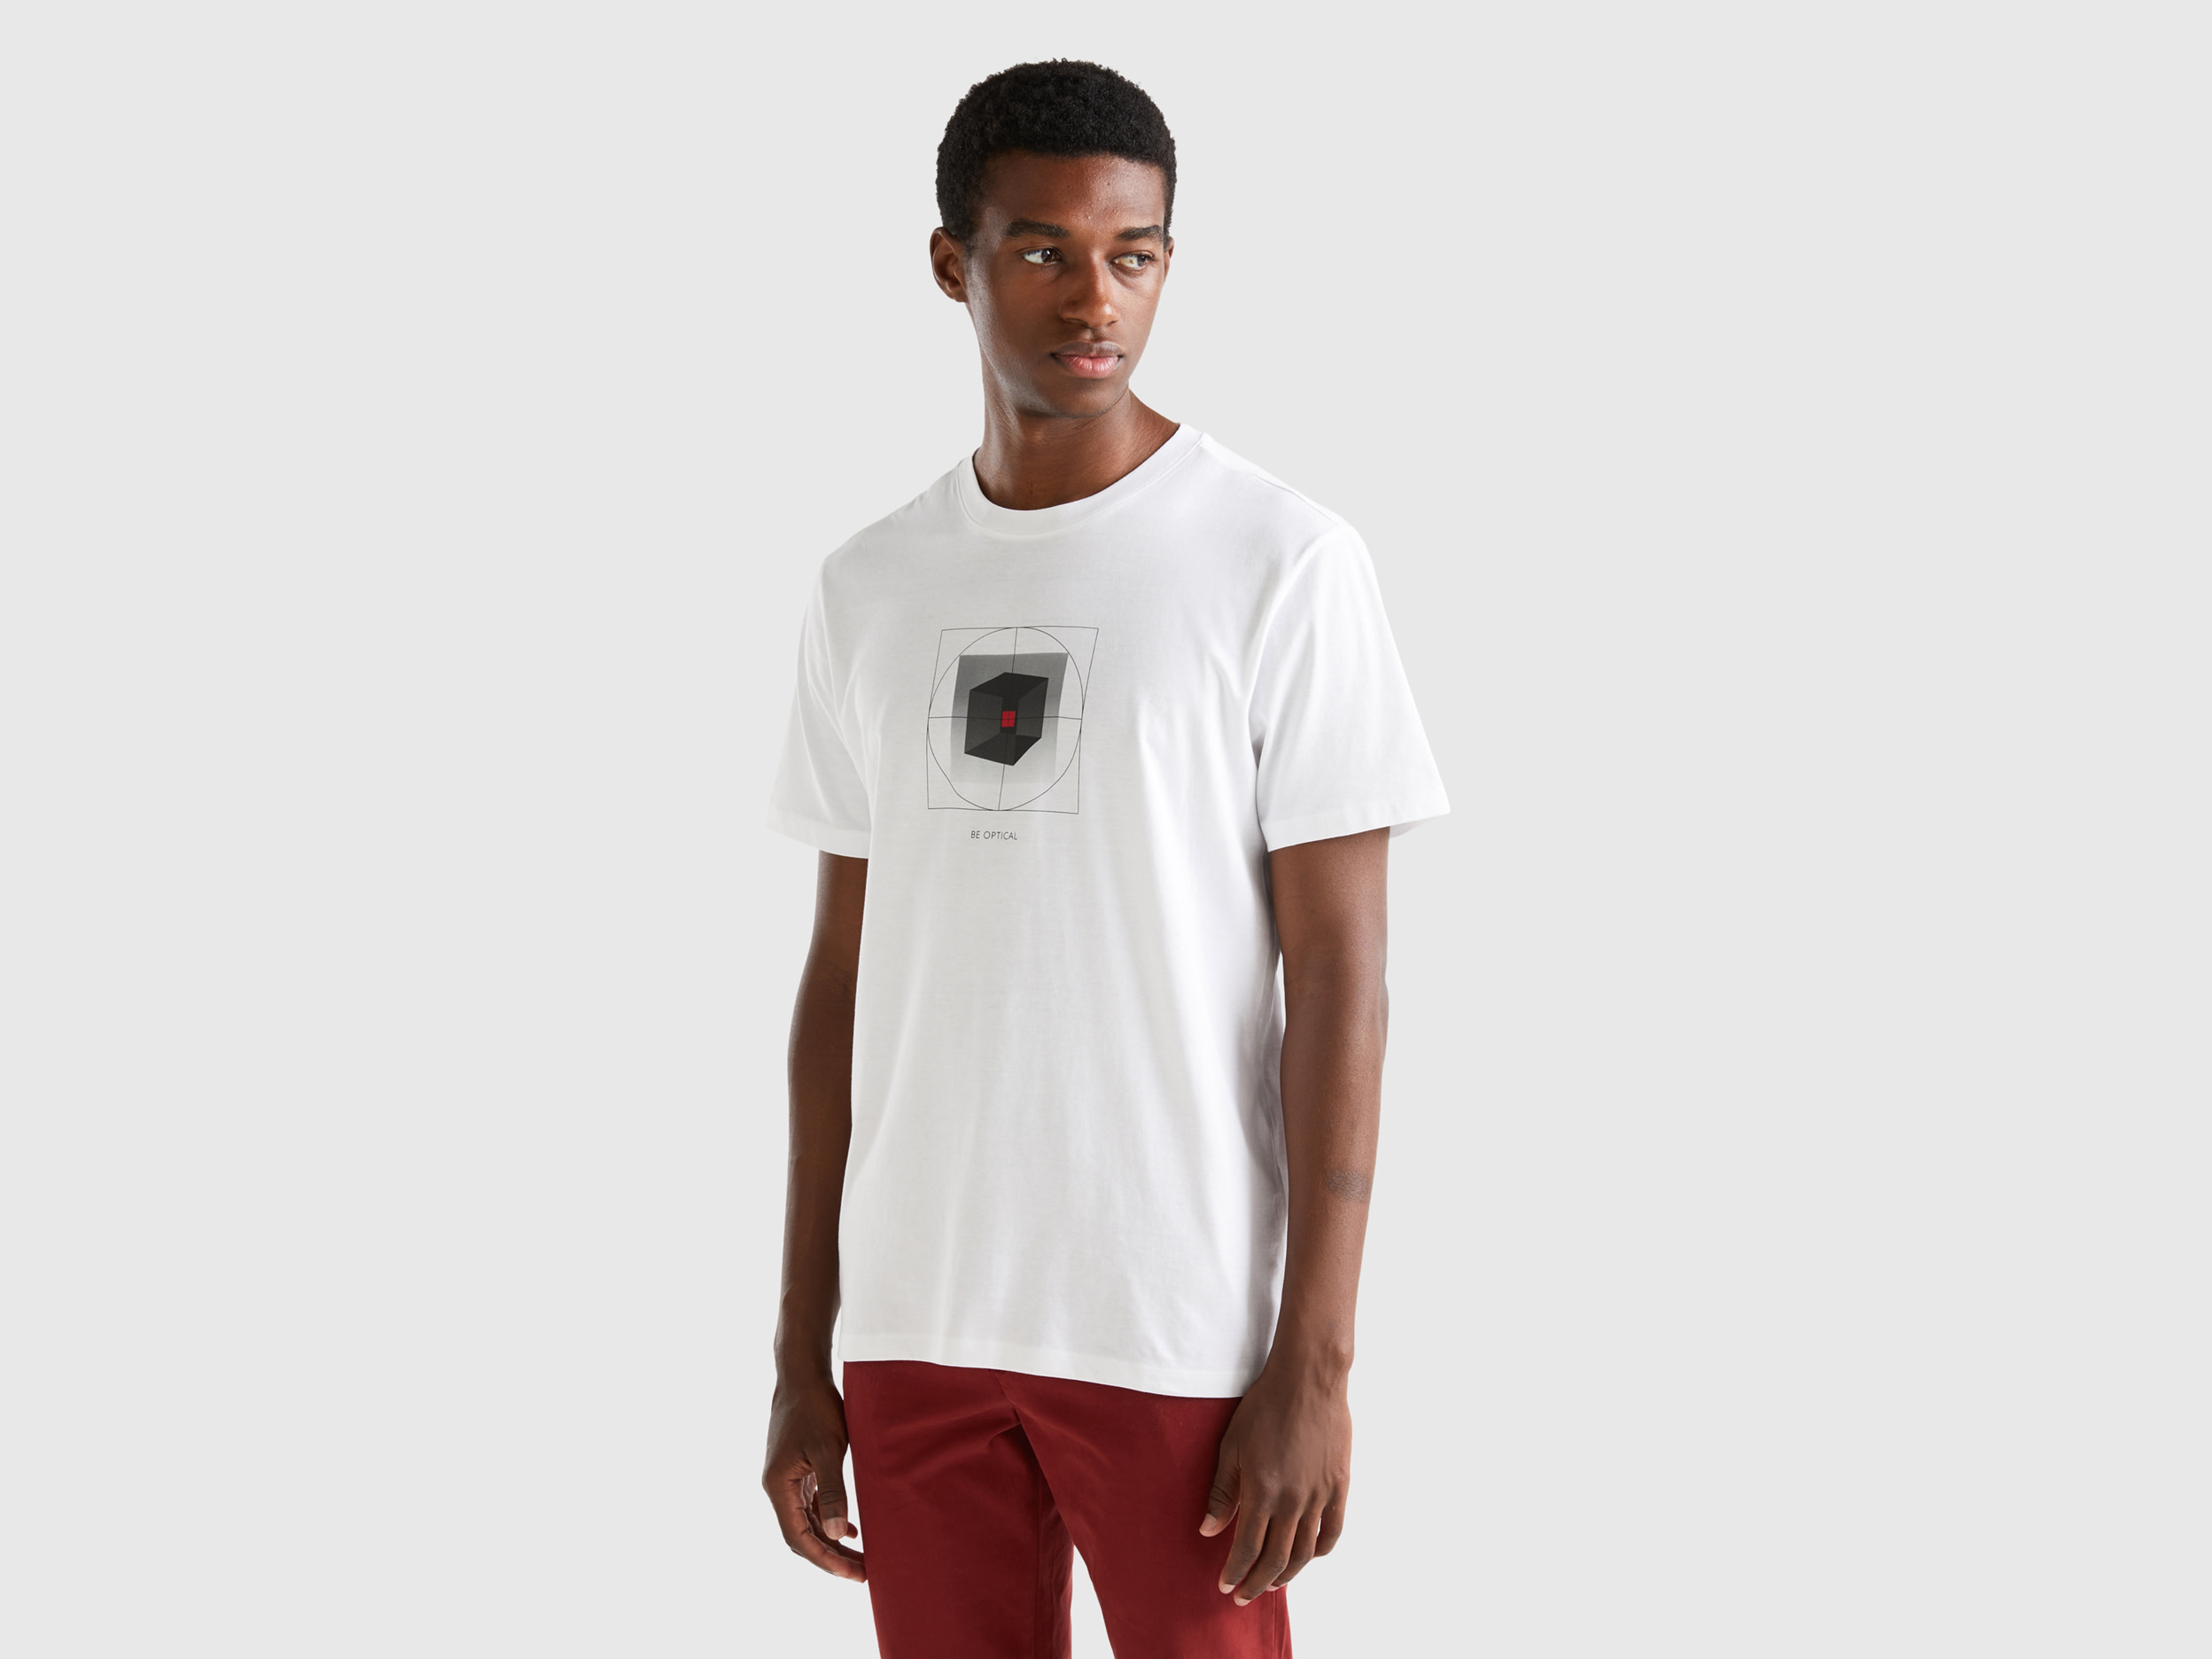 Benetton, 100% Cotton T-shirt With Print, size XXL, White, Men